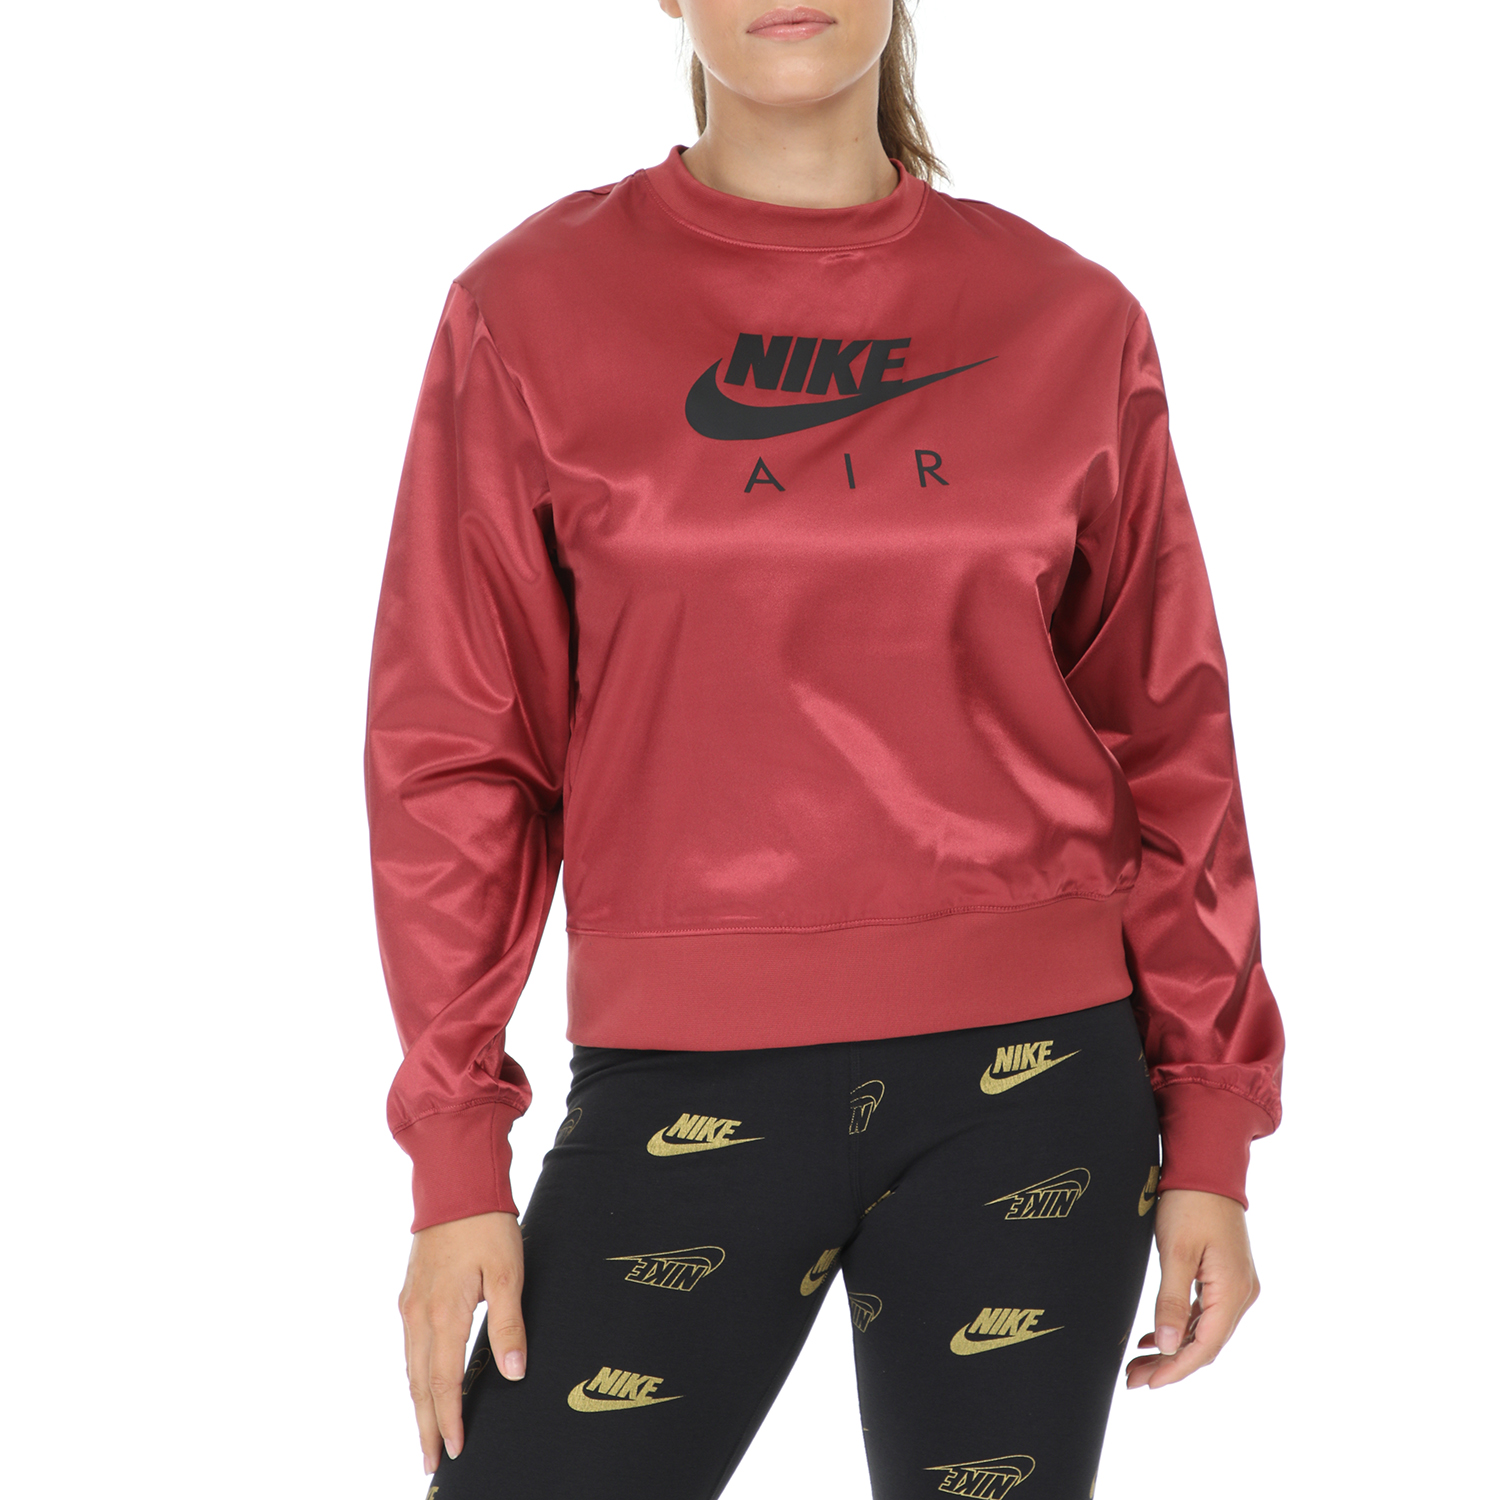 Γυναικεία/Ρούχα/Αθλητικά/Φούτερ-Μακρυμάνικα NIKE - Γυναικεία μπλούζα φούτερ NIKE NSW AIR CREW SATIN κόκκινη